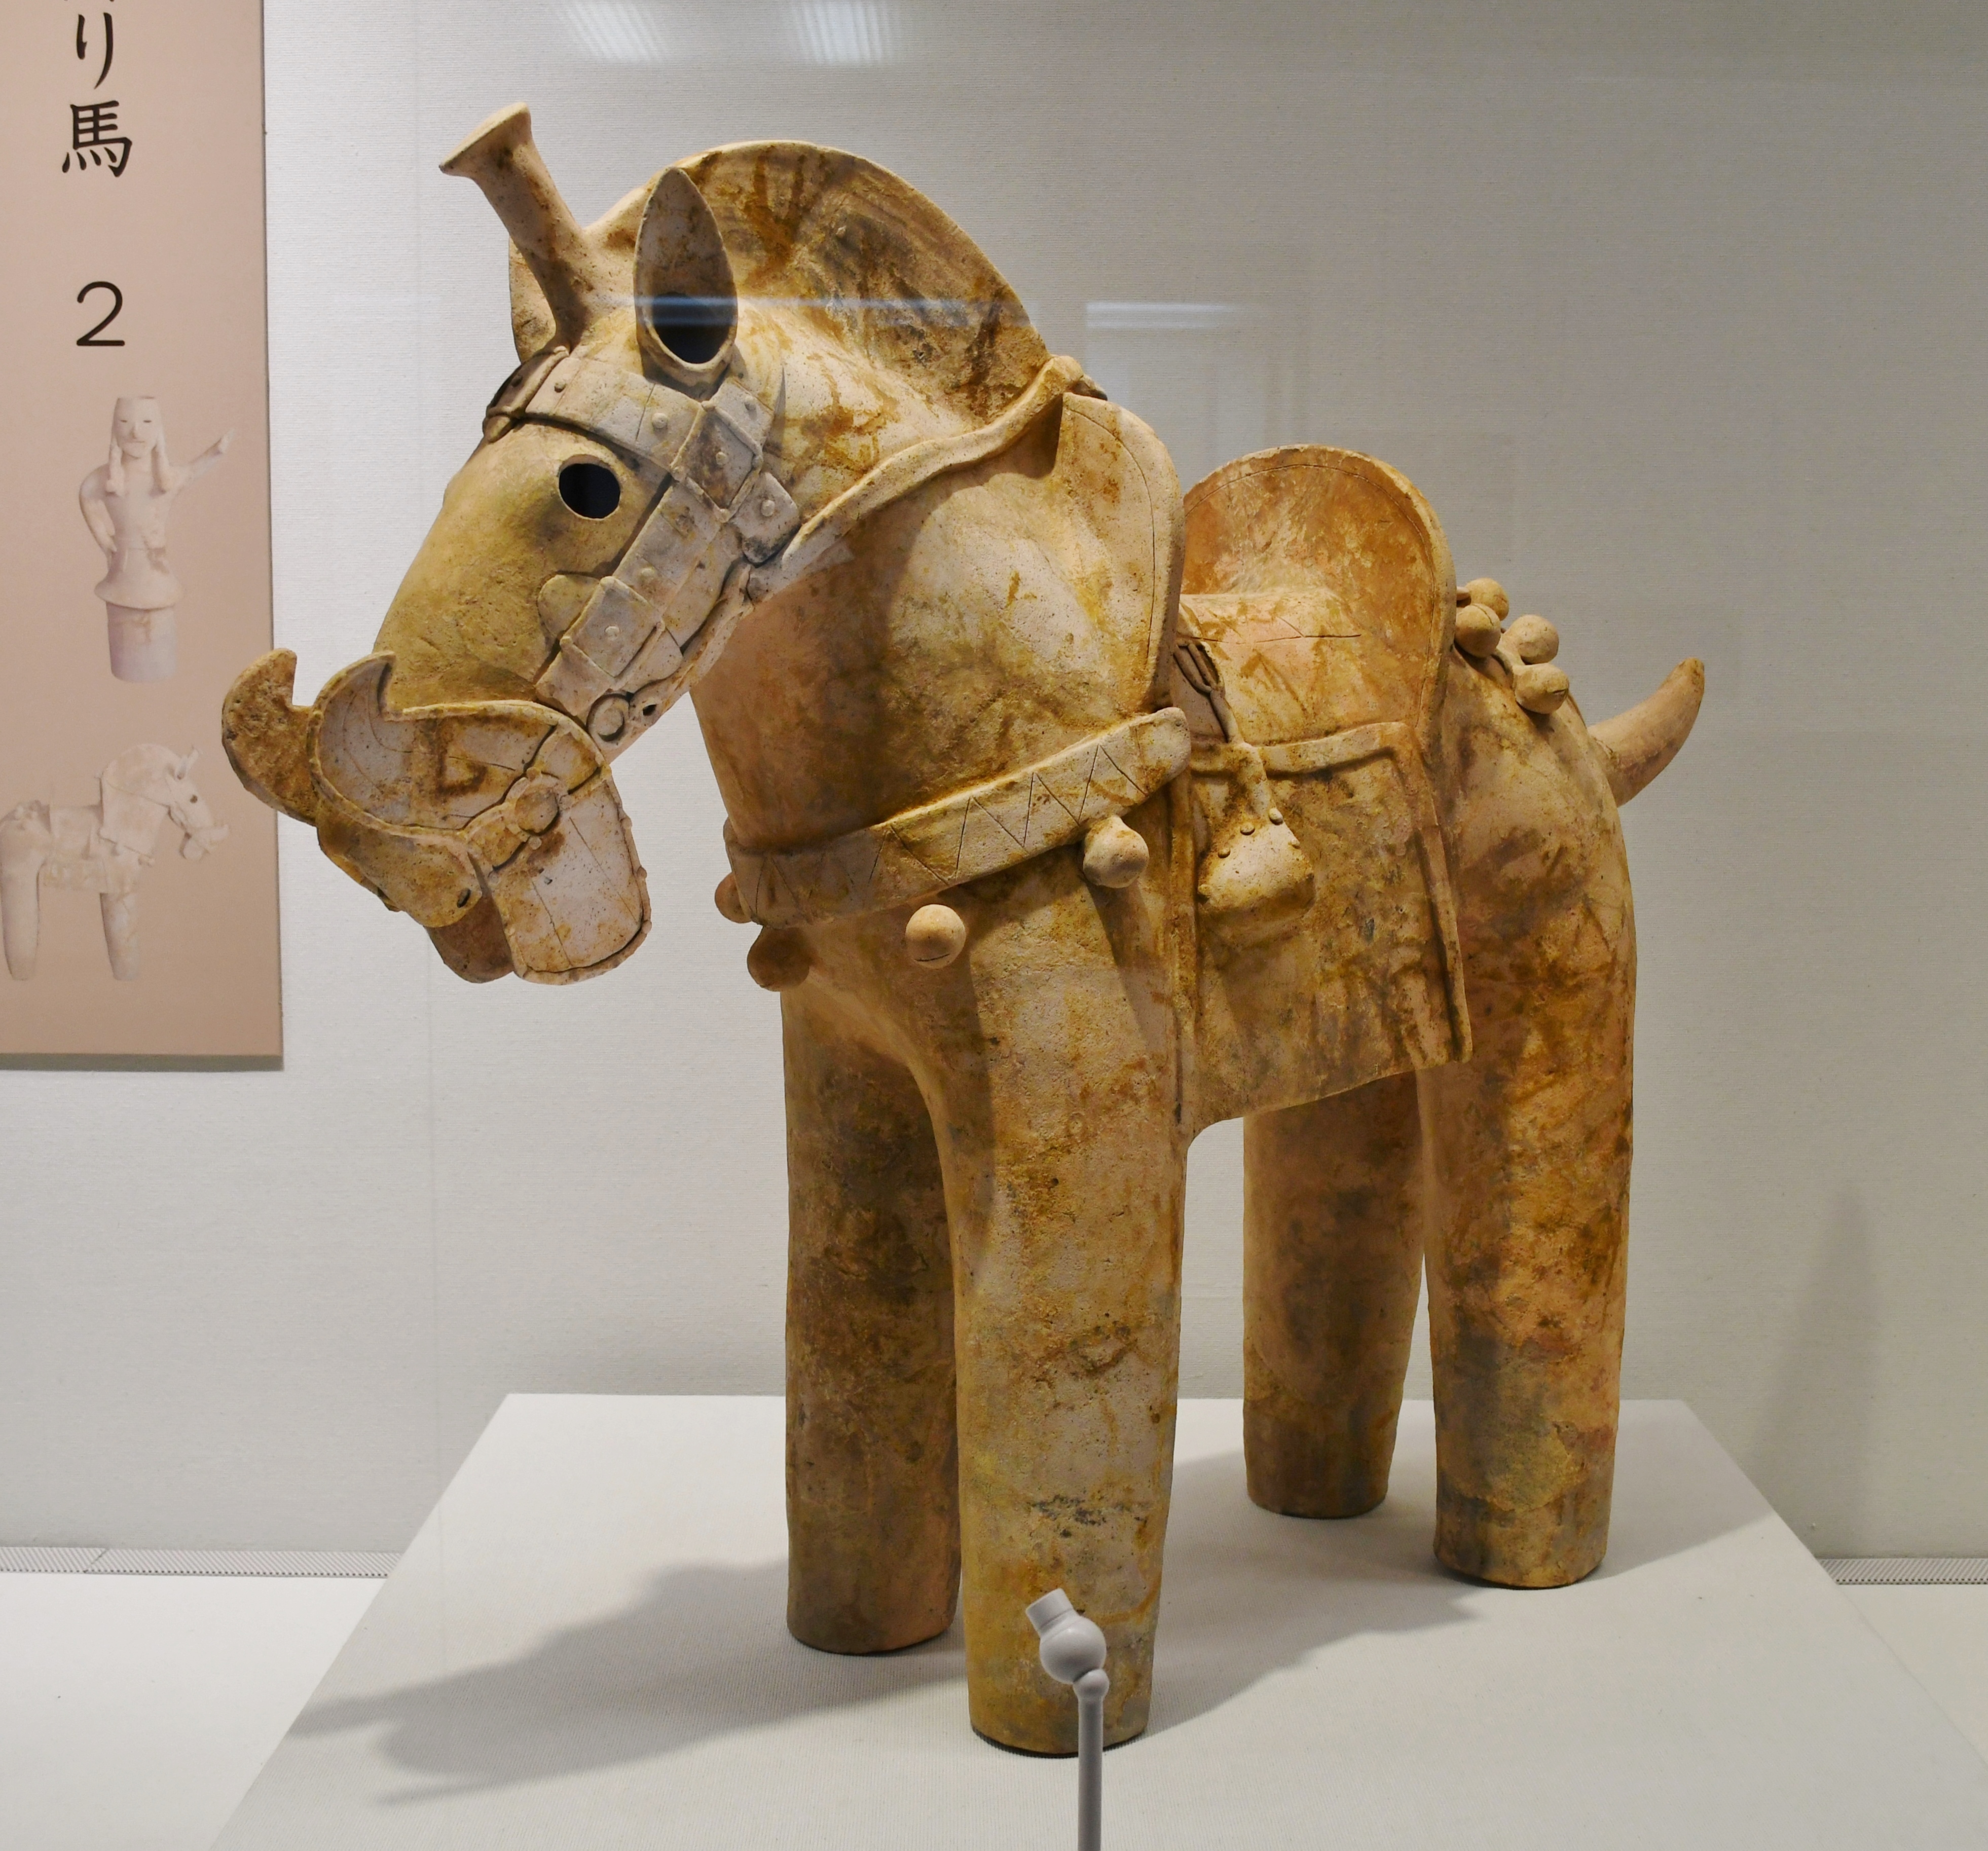 File:塚廻り4号古墳出土 埴輪 飾り馬-2.JPG - Wikimedia Commons